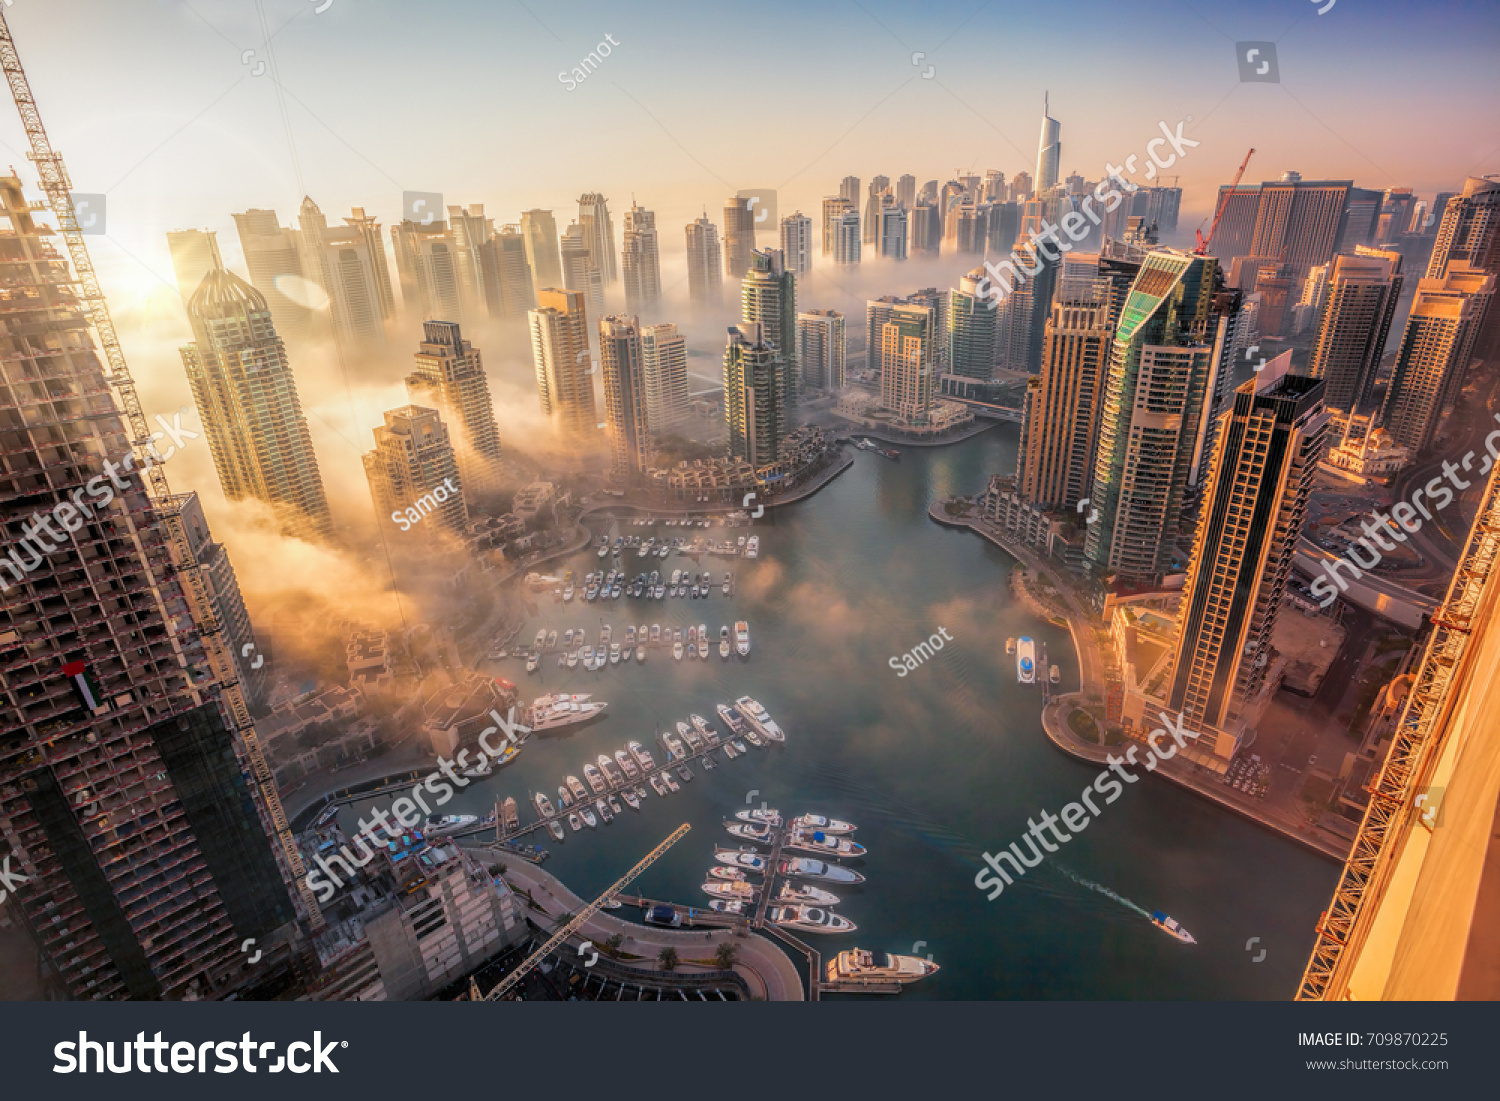 Dubai Marina with colorful sunset in Dubai, United Arab Emirates #709870225